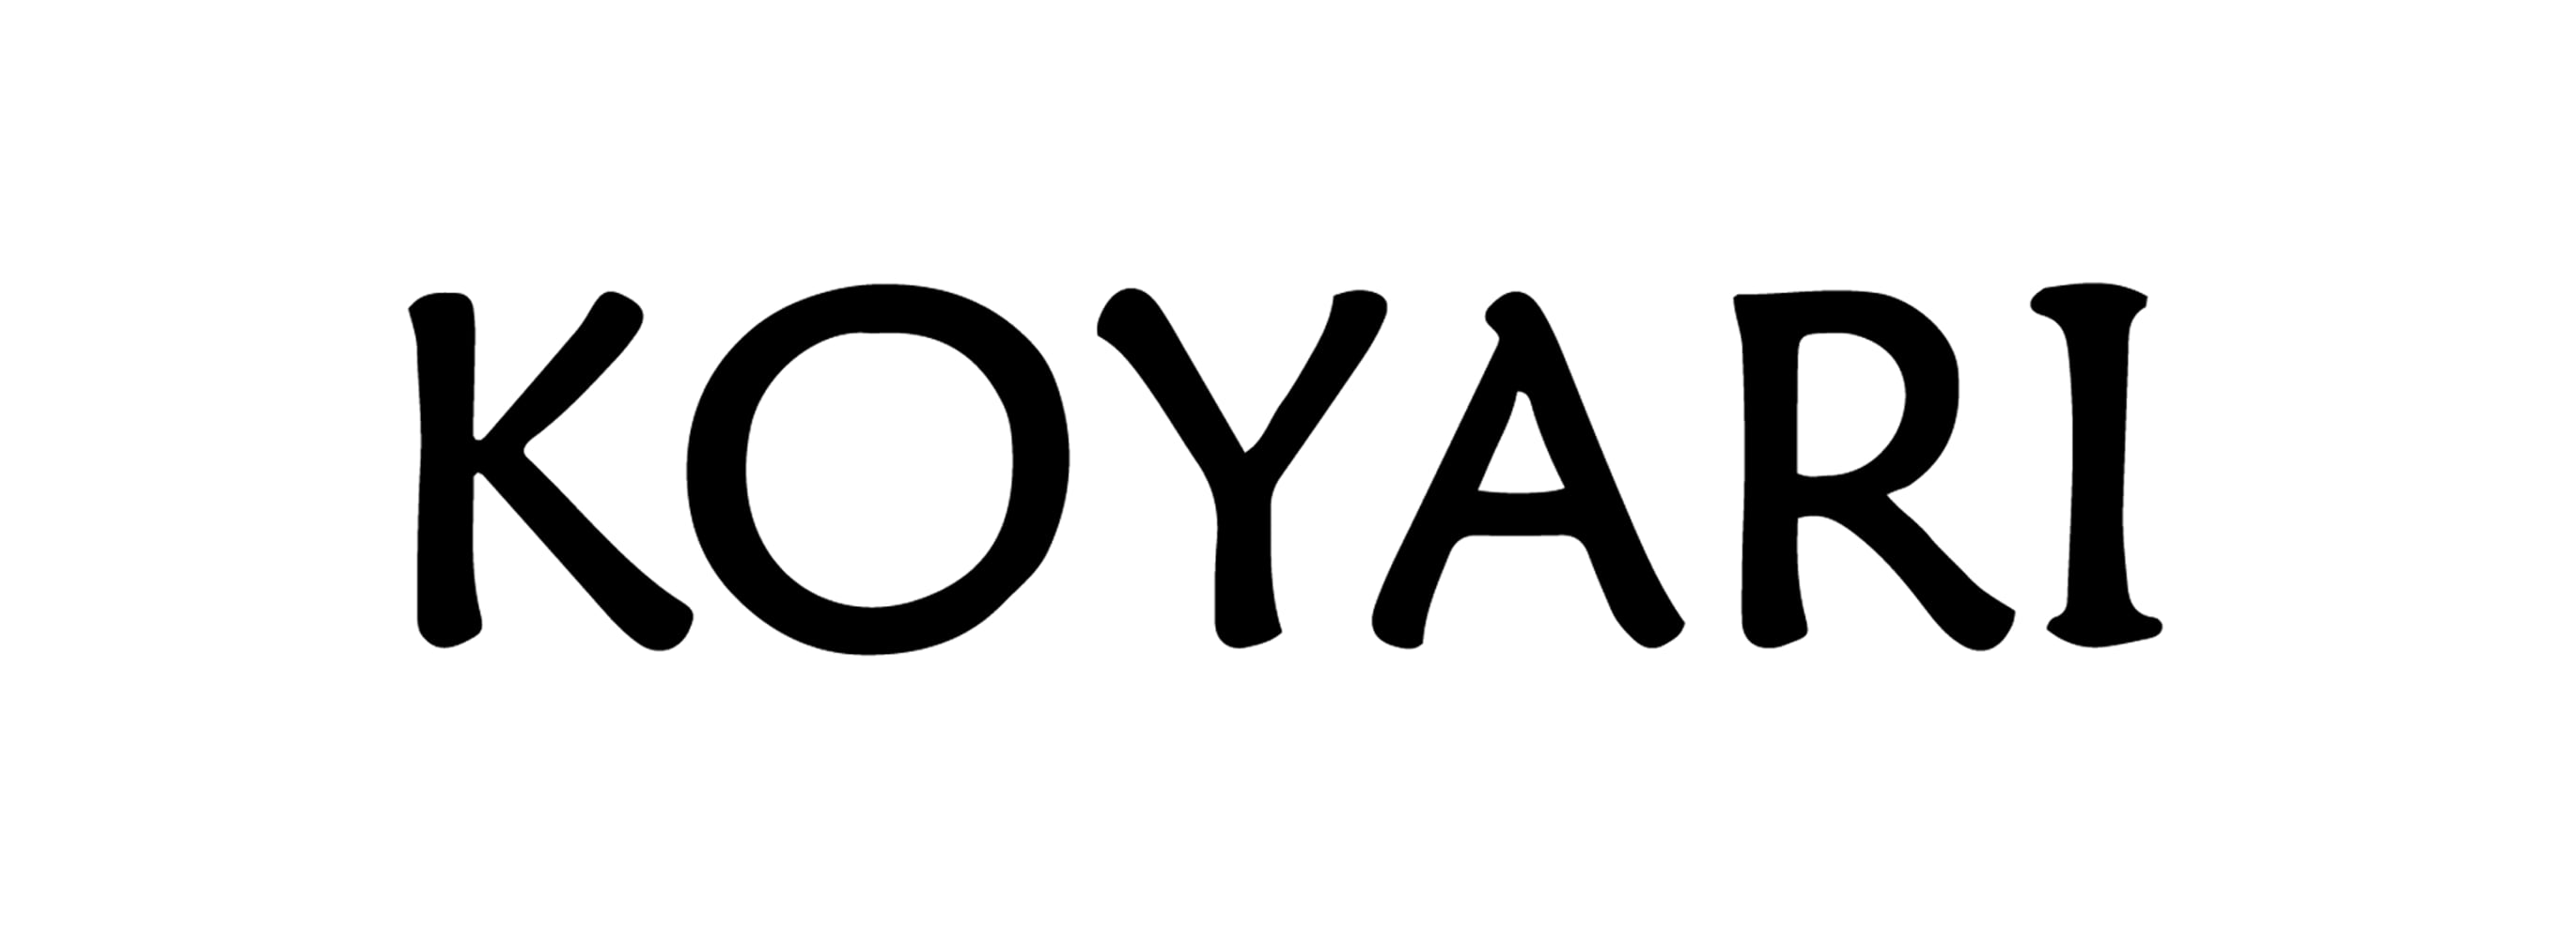 KOYARI